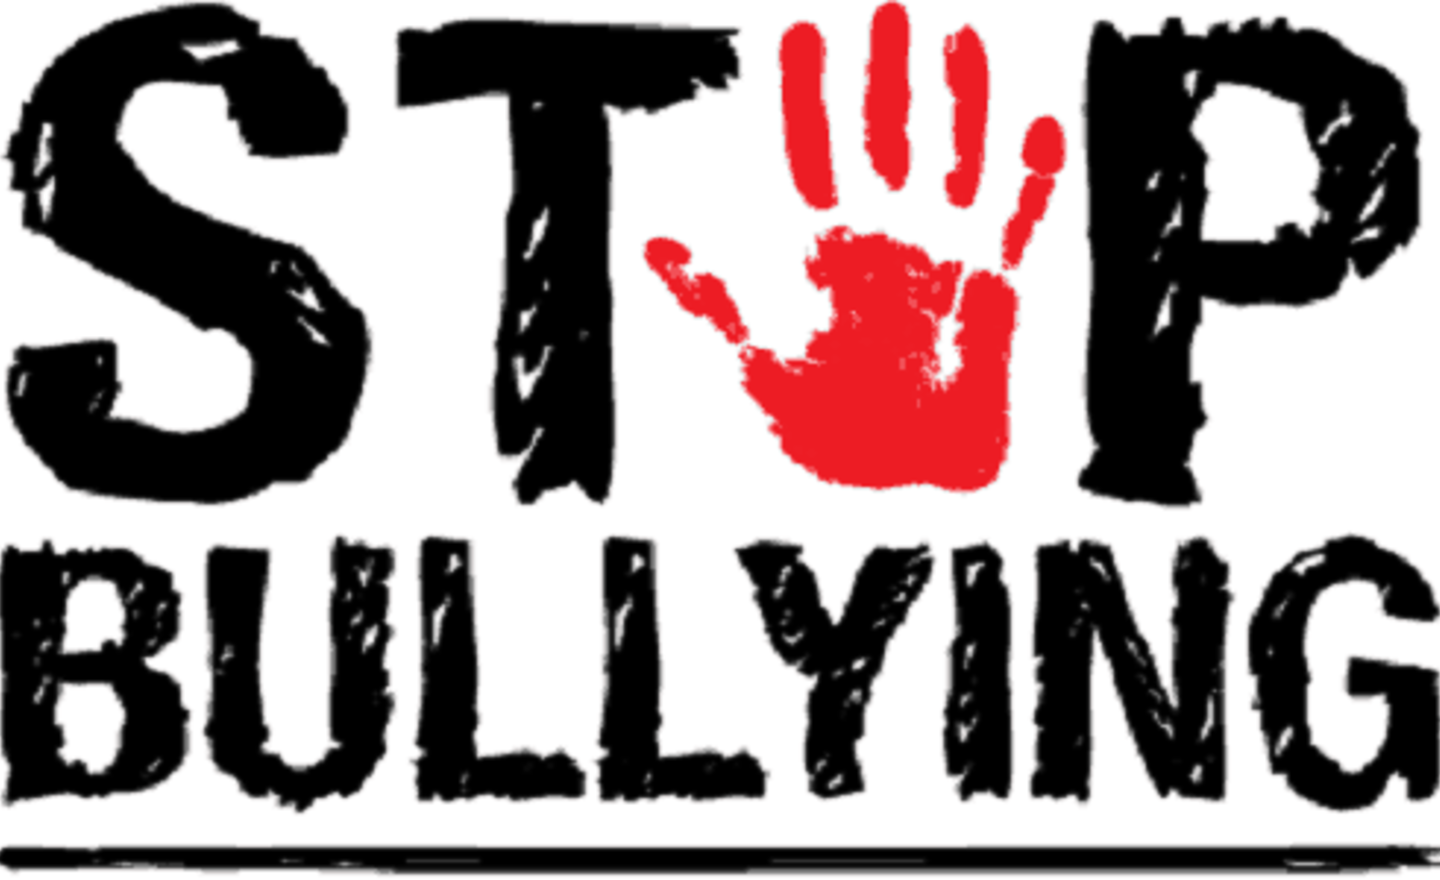 Image of Anti Bullying week